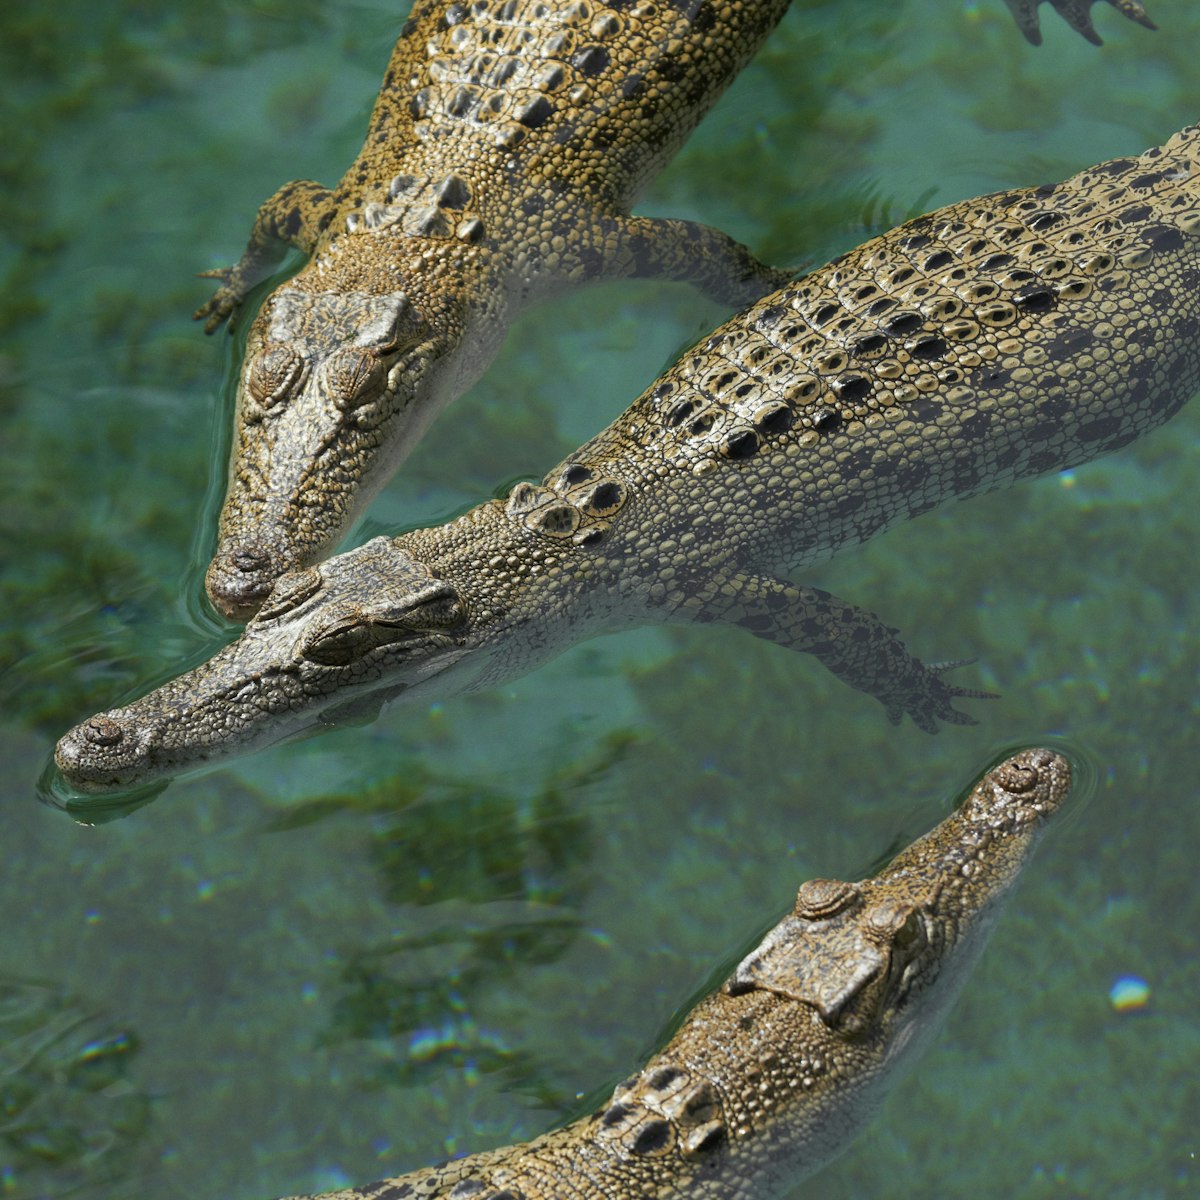 Saltwater crocodiles (Crocodylus porosus) lounging in pool at Crocosaurus Cove.